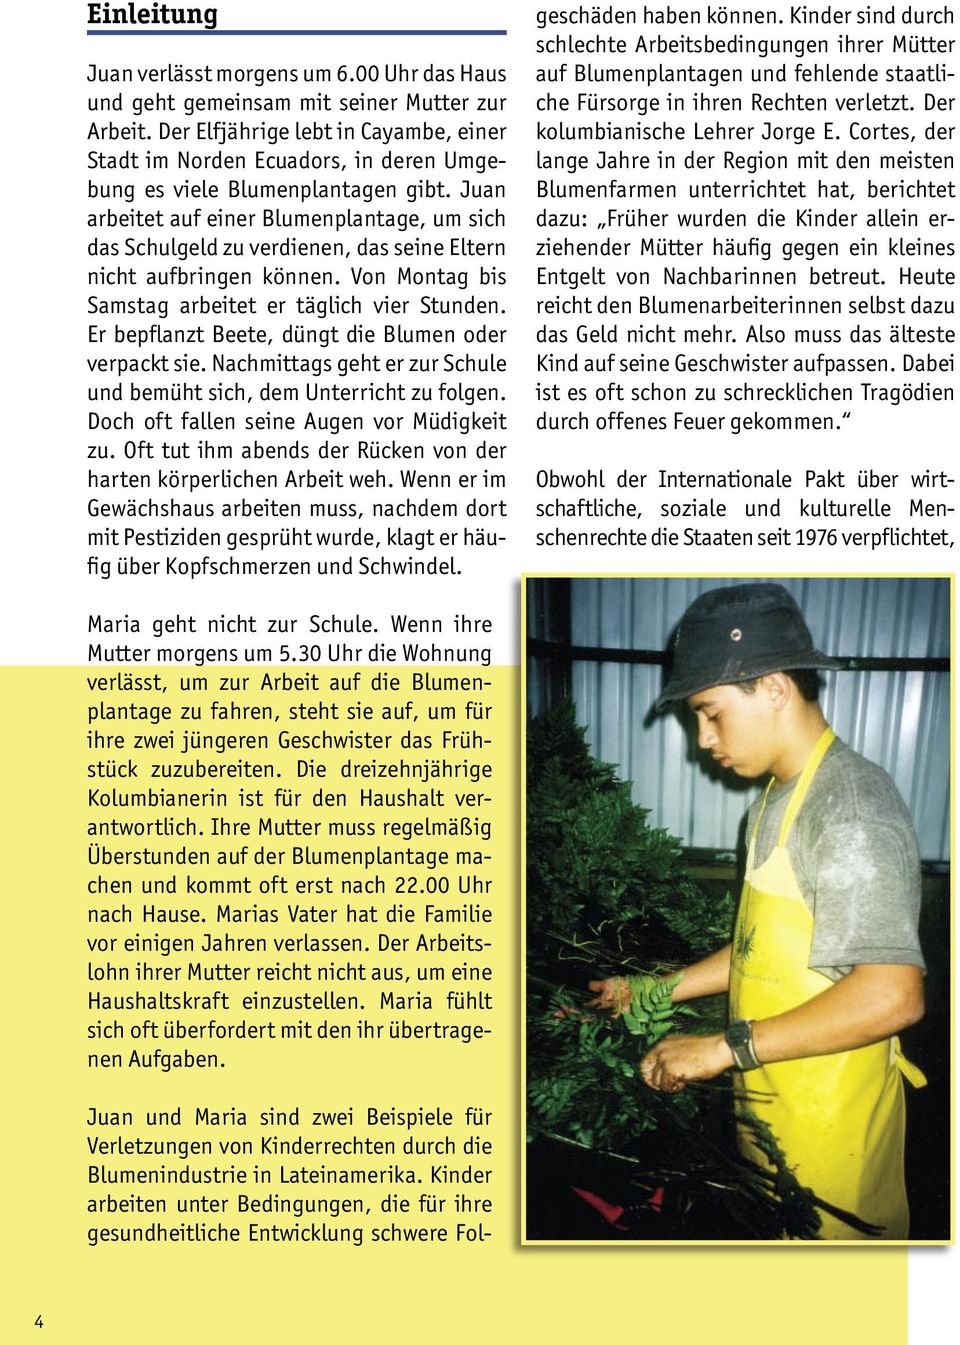 Juan arbeitet auf einer Blumenplantage, um sich das Schulgeld zu verdienen, das seine Eltern nicht aufbringen können. Von Montag bis Samstag arbeitet er täglich vier Stunden.